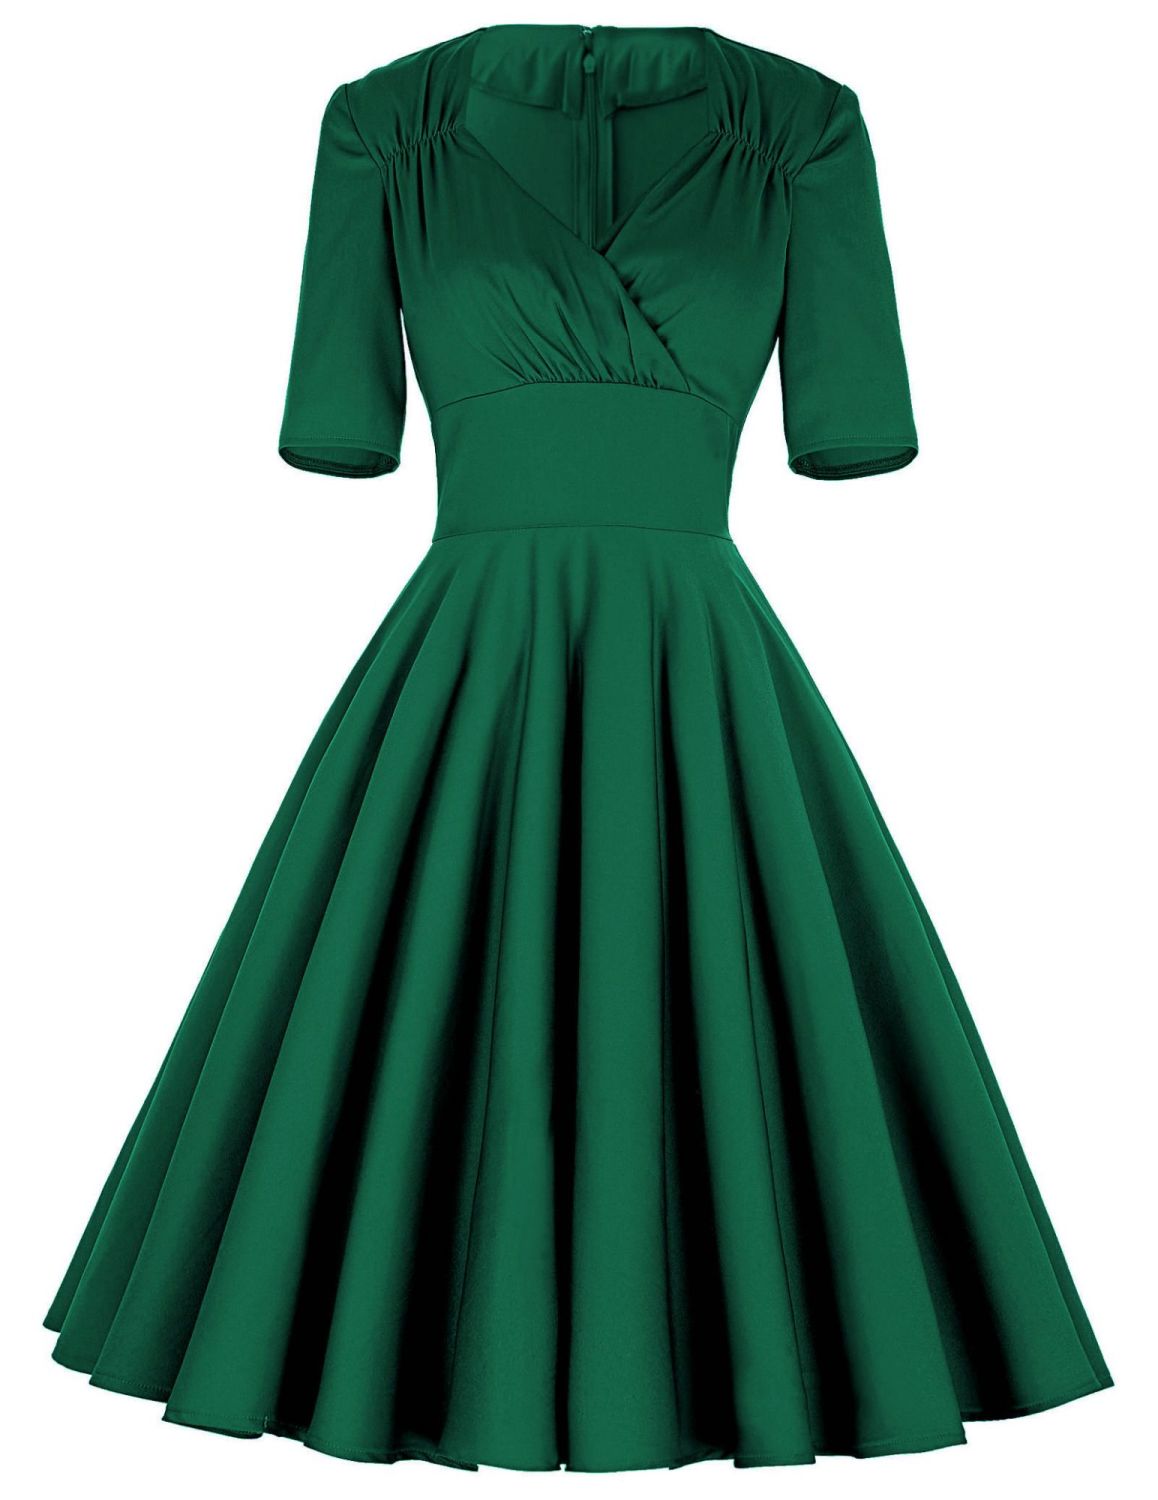 Green 3/4 sleeve, full swing skirt 50's 